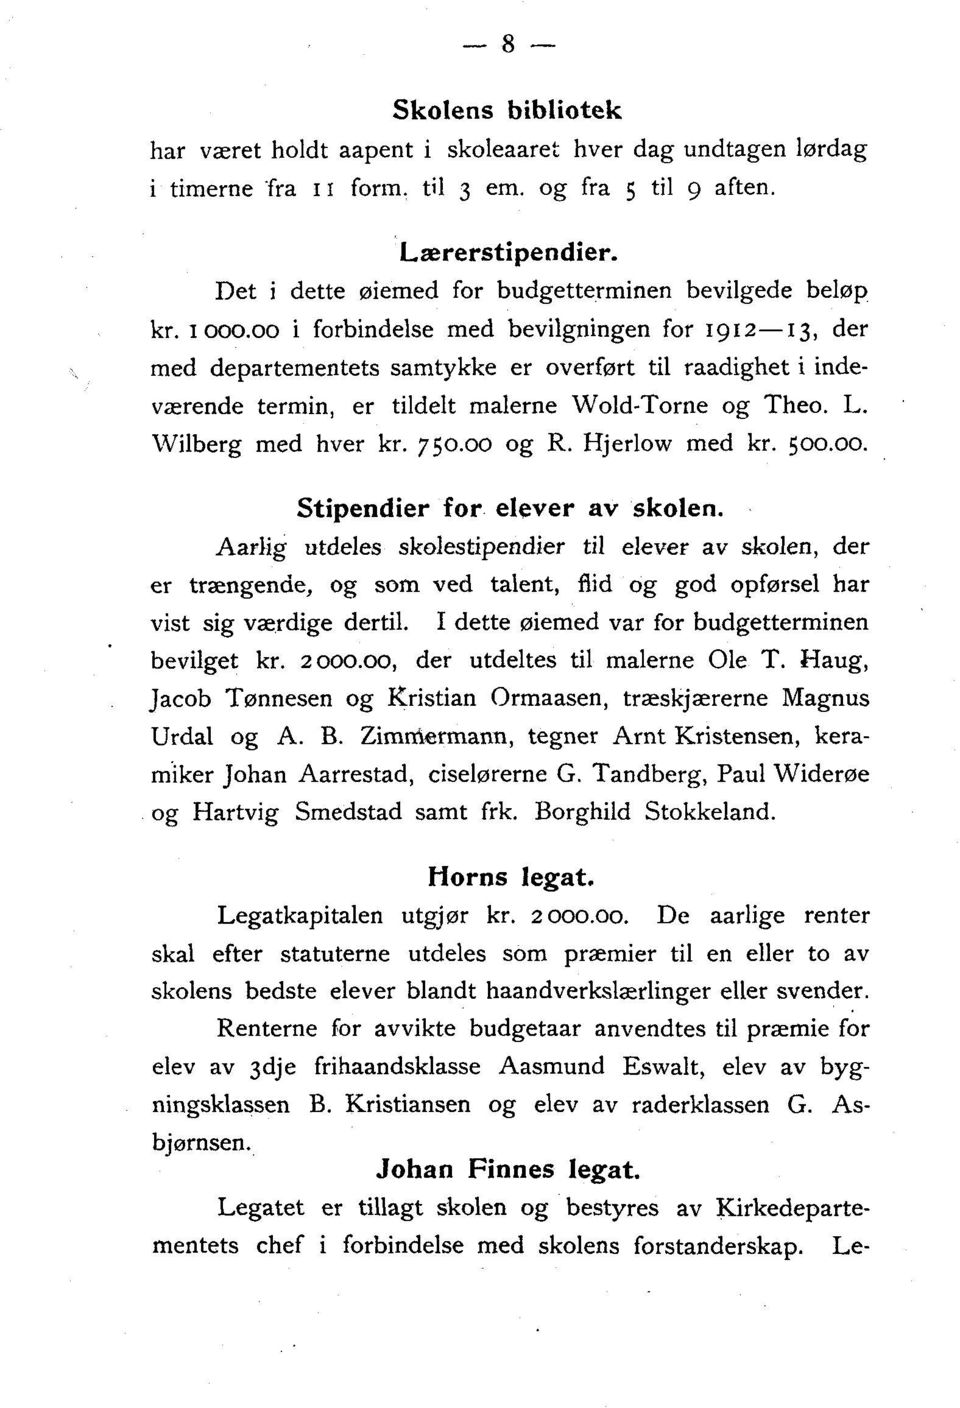 00 i forbindelse med bevilgningen for 1912-13, der med departementets samtykke er overført til raadighet i indeværende termin, er tildelt malerne Wold-Torne og Theo. L. Wilberg med hver kr. 750.